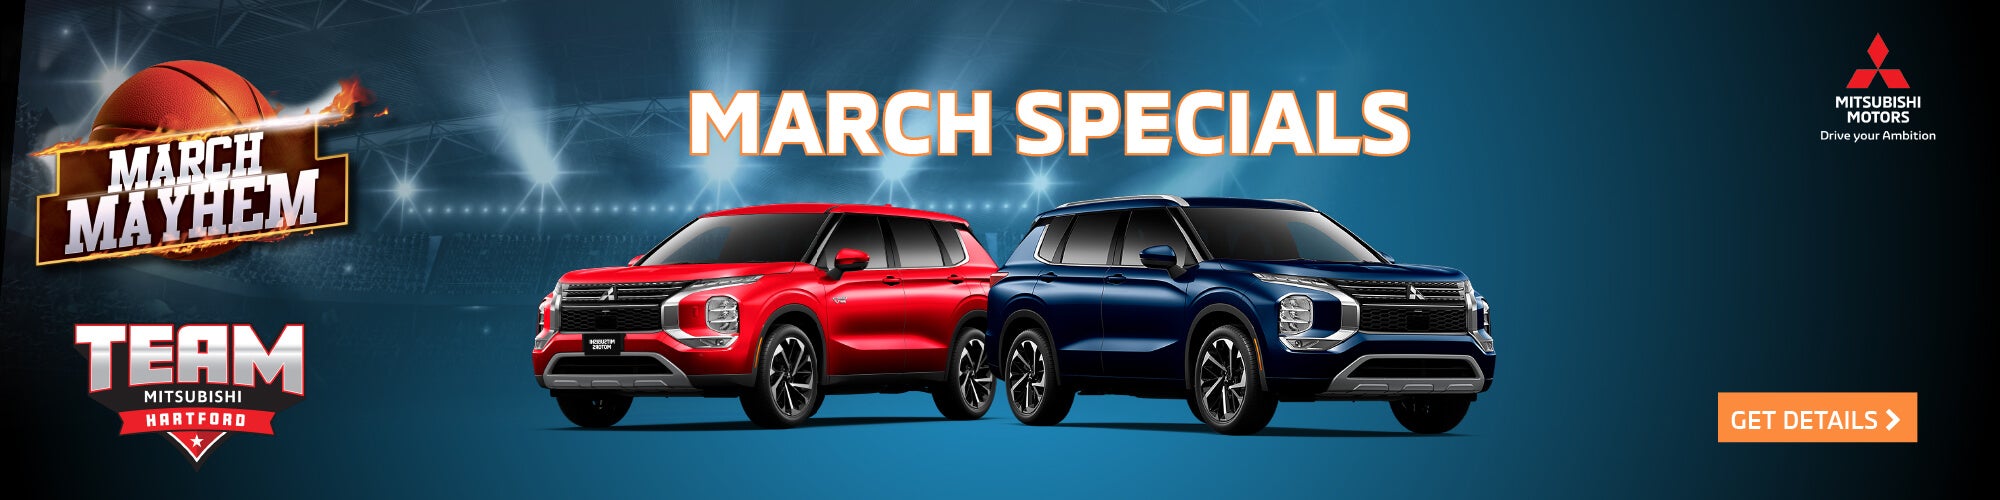 March Specials 